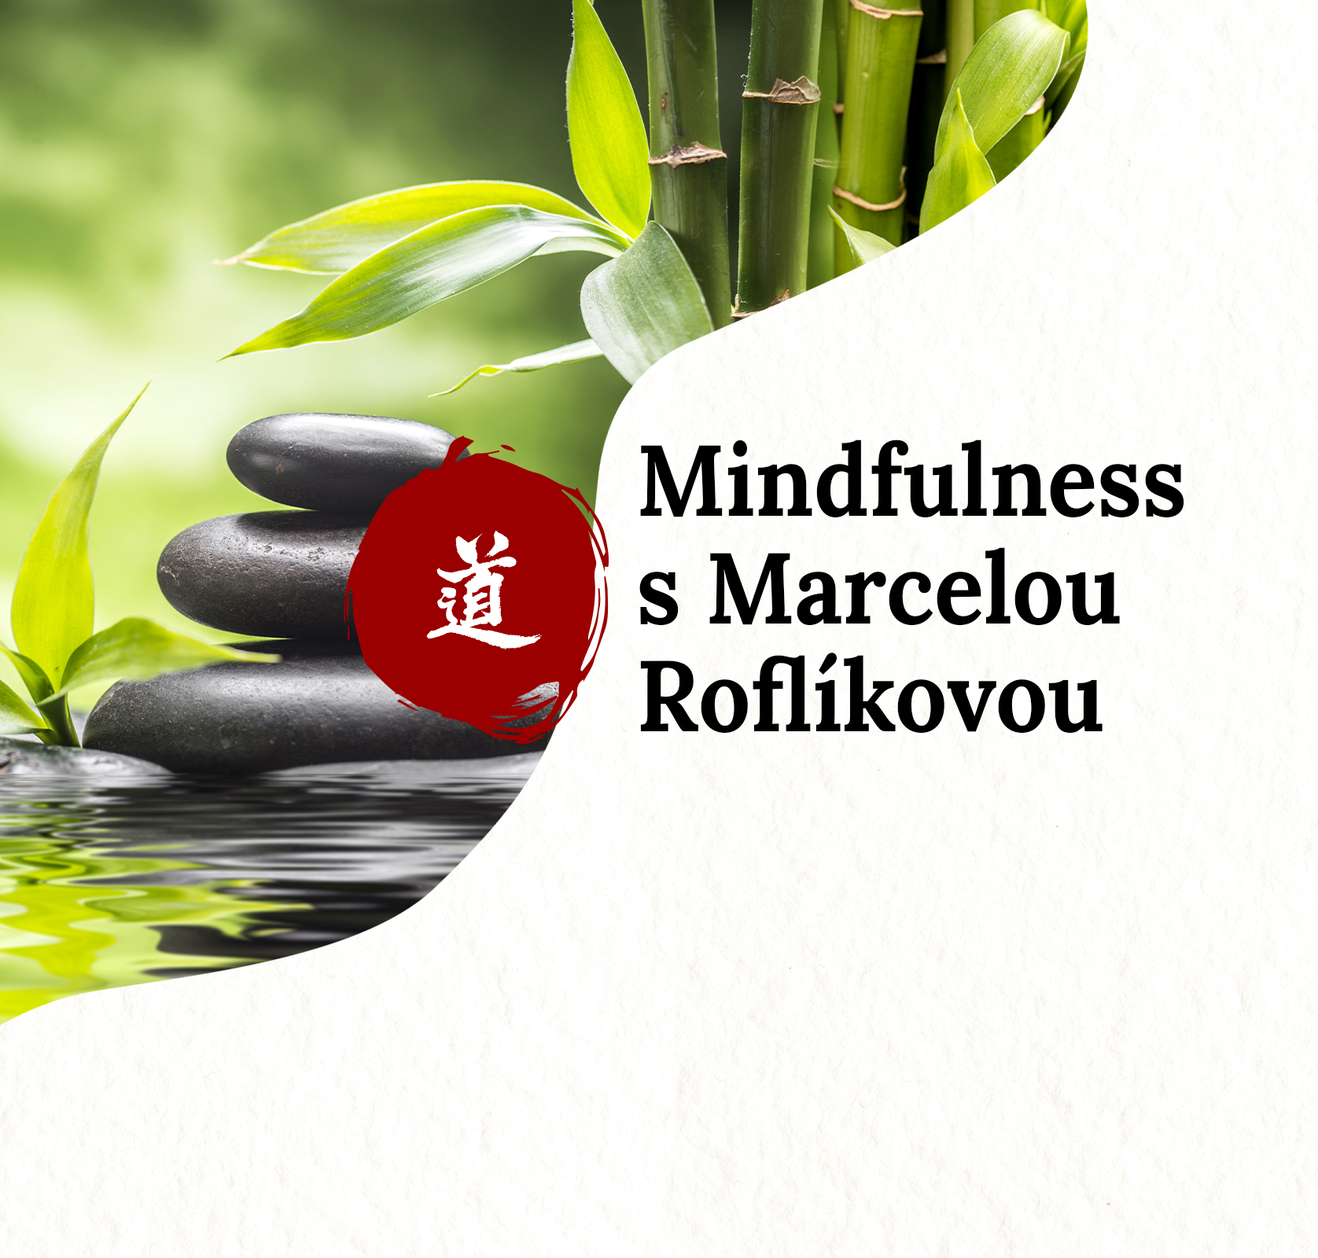 Mindfulness - zklidnn mysli